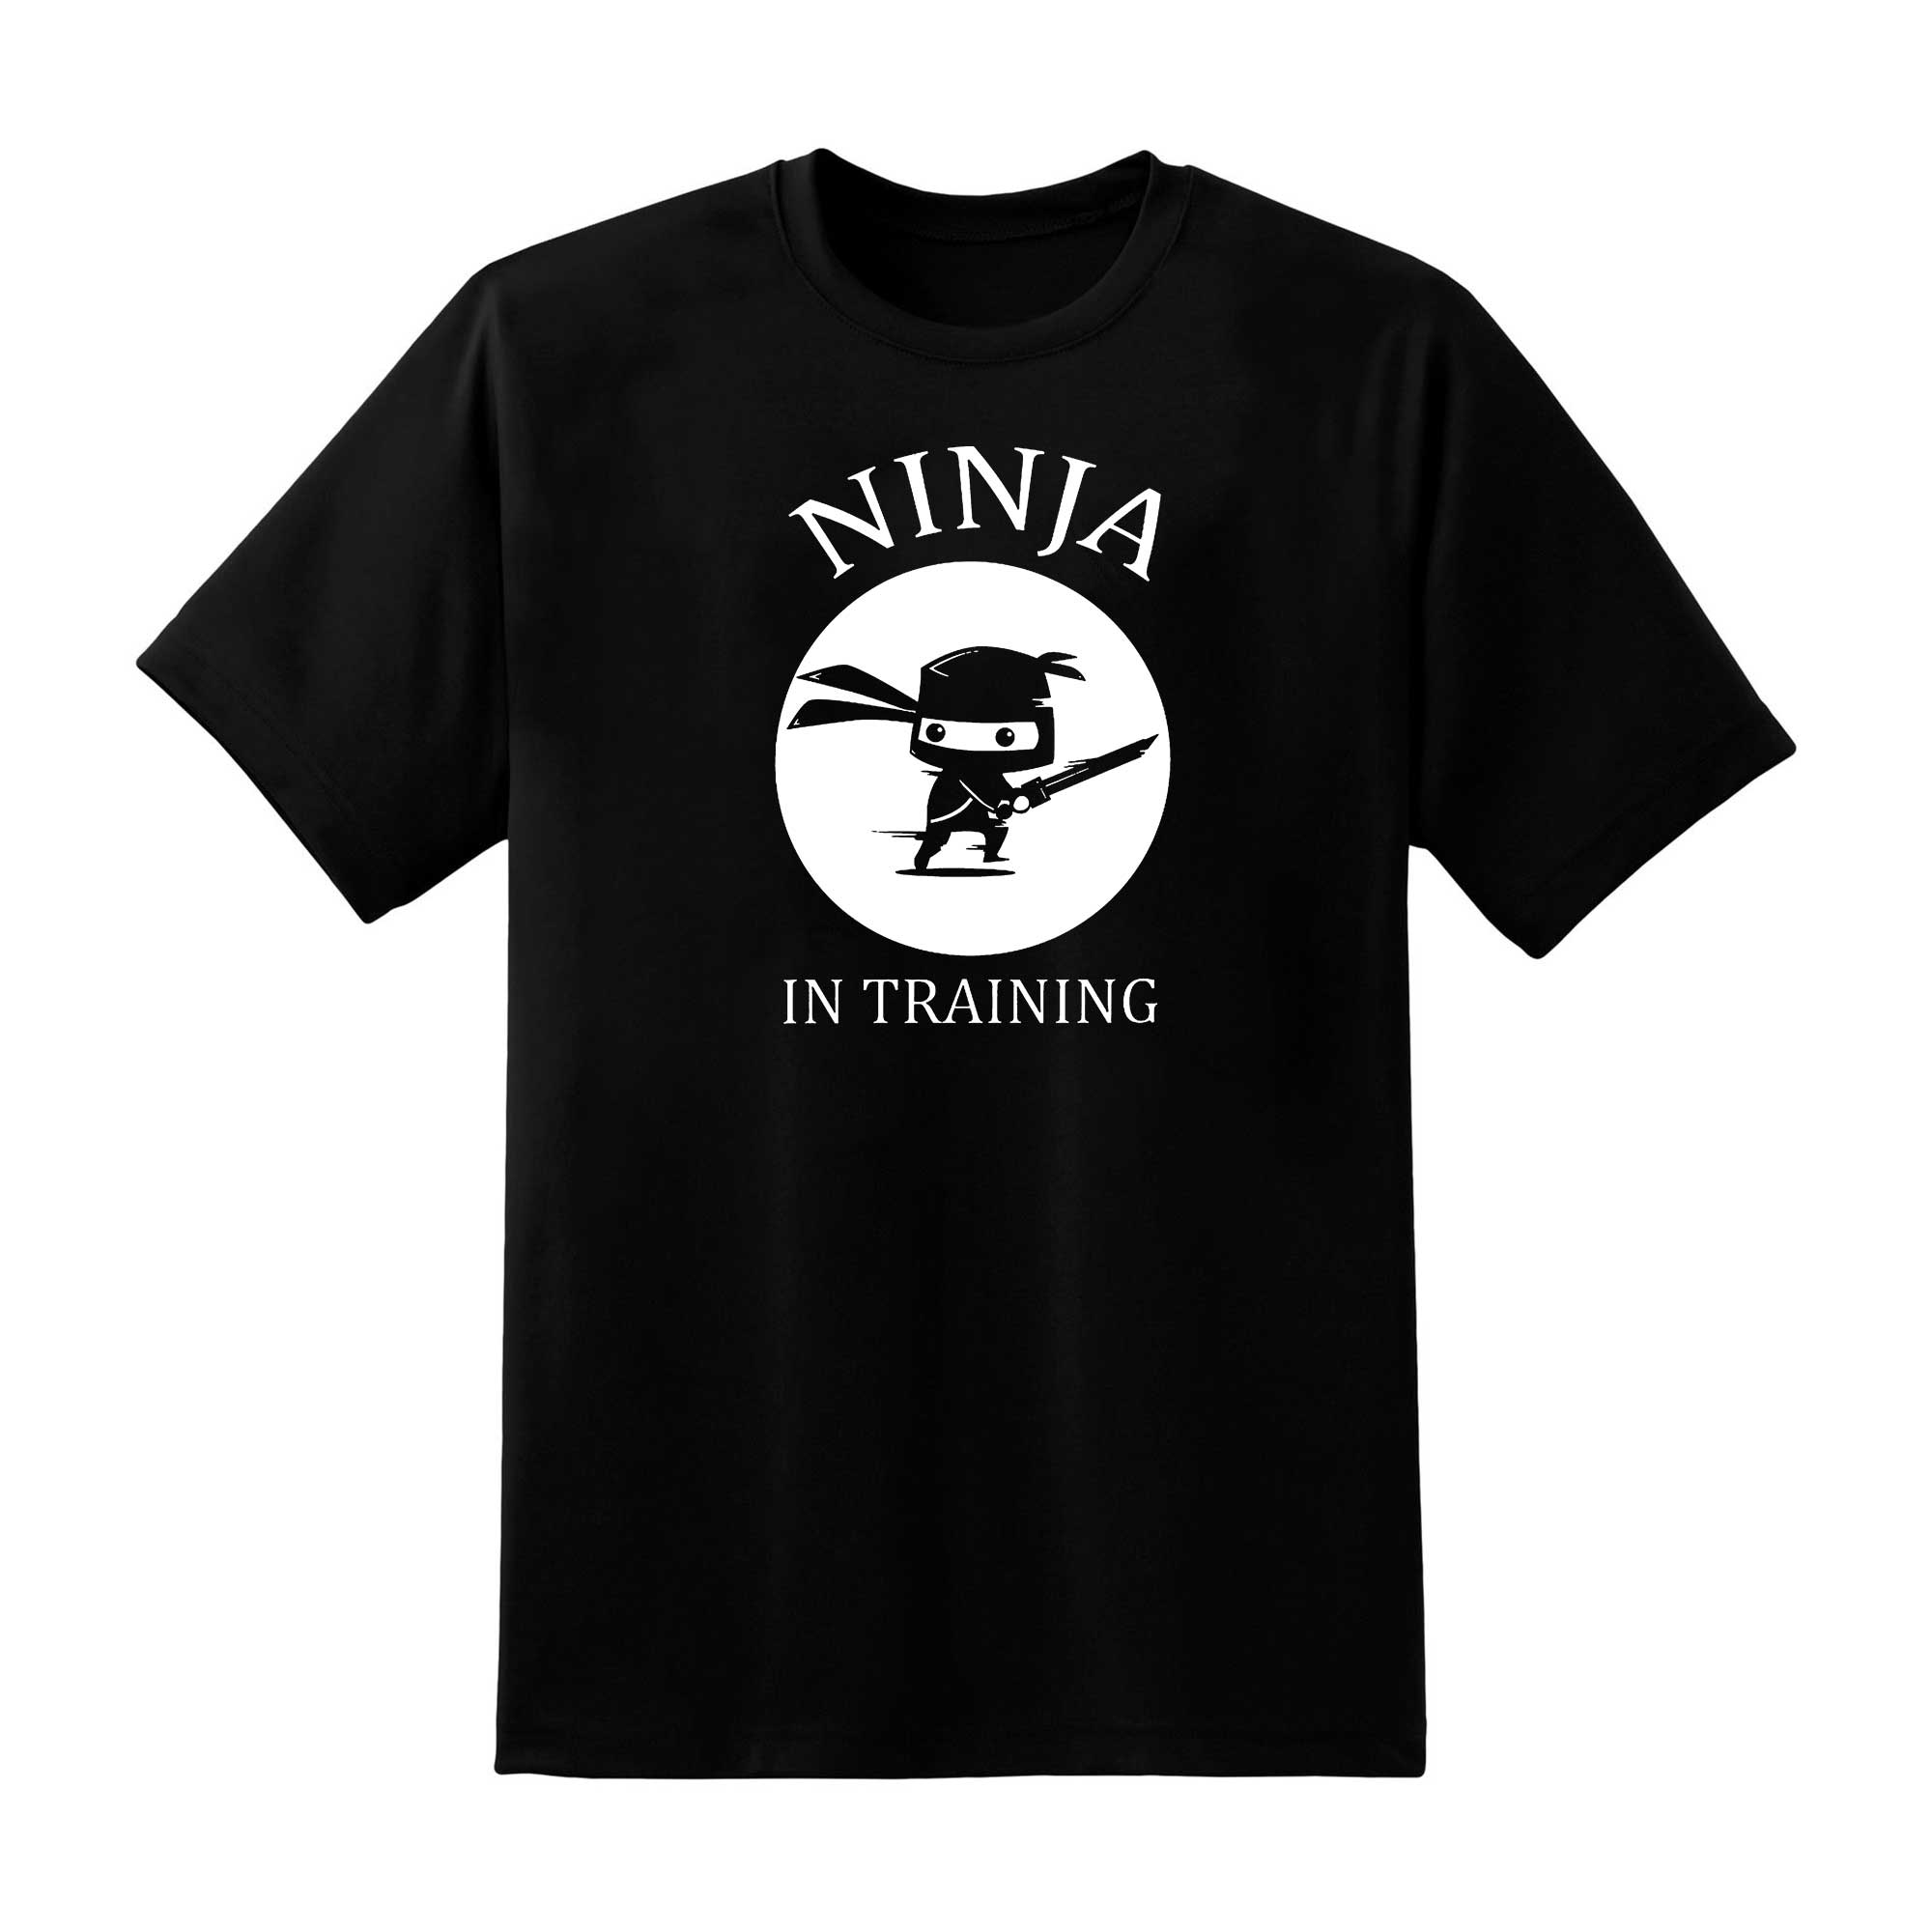 Skitongift Ninja In Training Funny Shirts